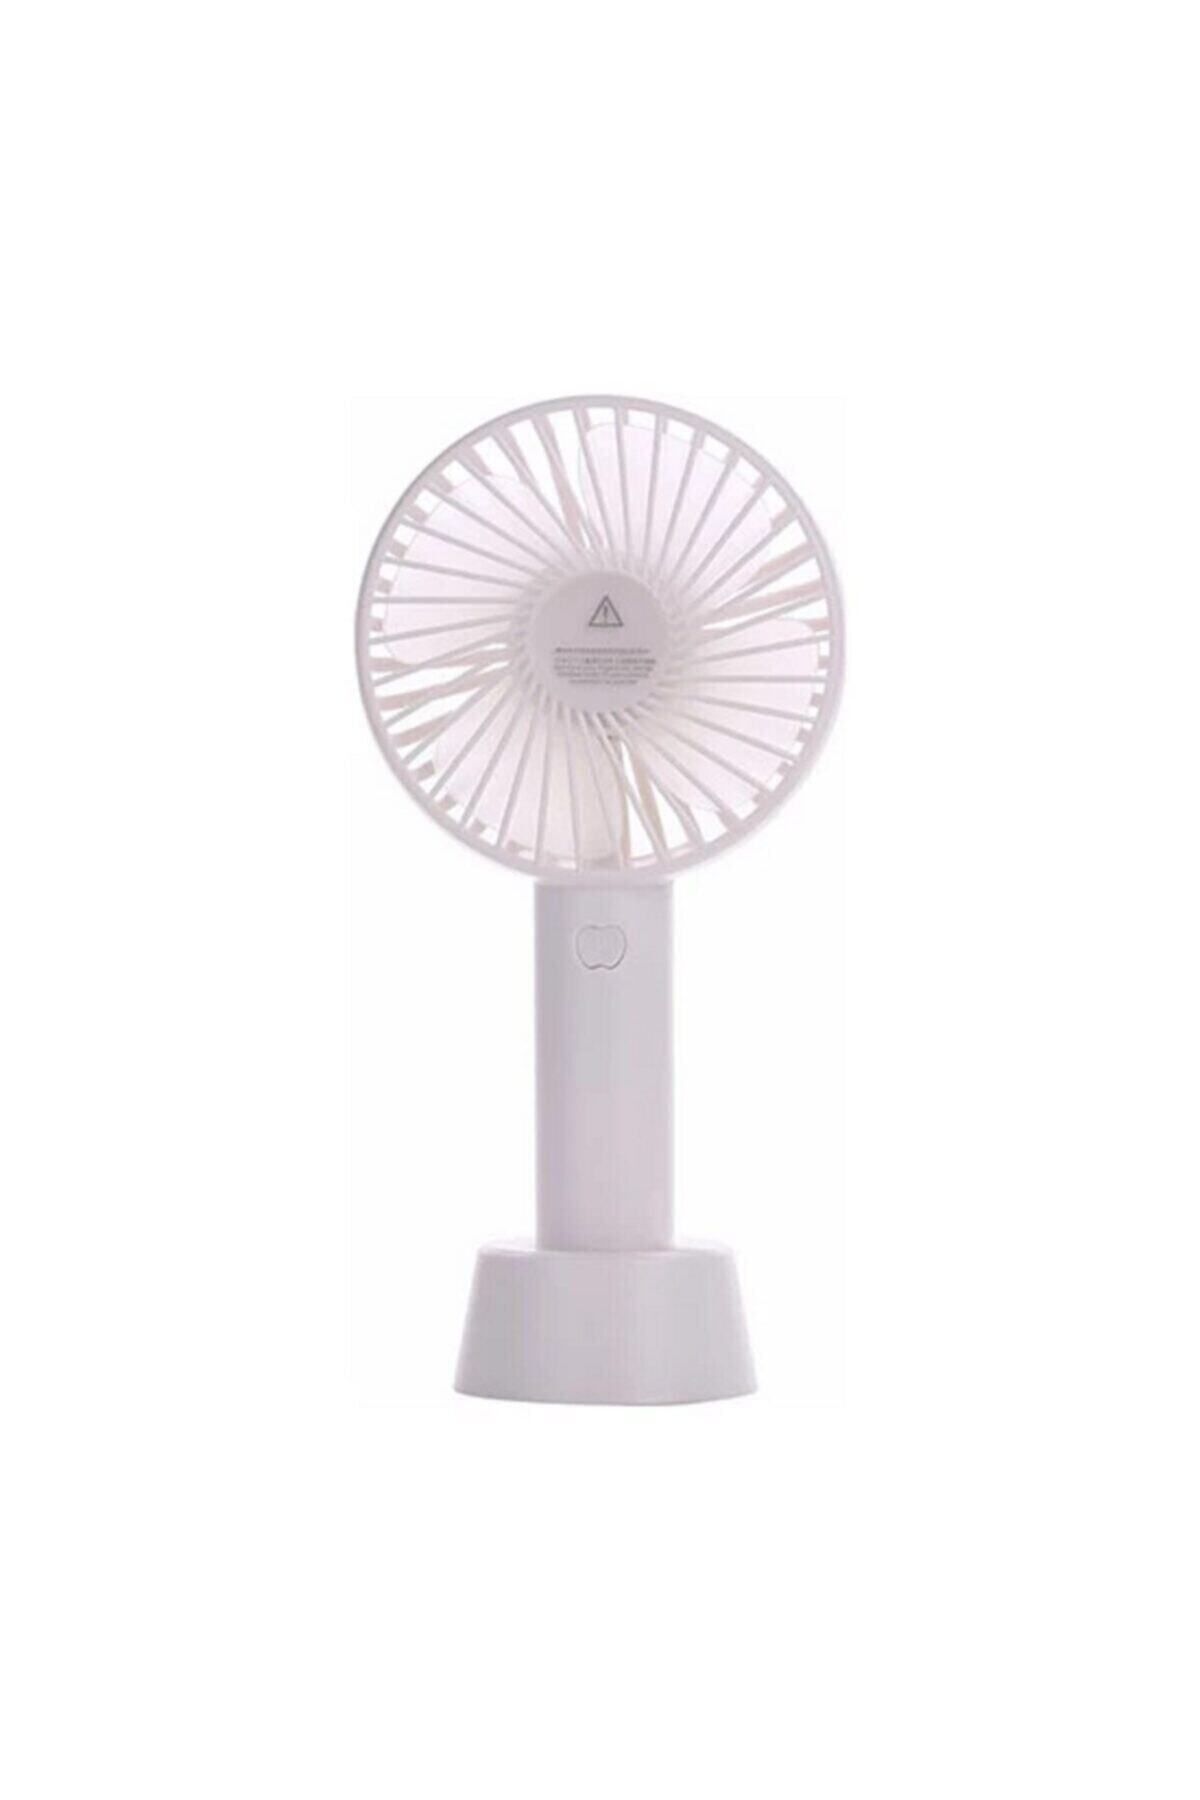 AteşTech Şarjlı Fan Mini Taşınabilir El ve Masa Üstü 3 Kademeli Vantilatör Fan Beyaz Renk